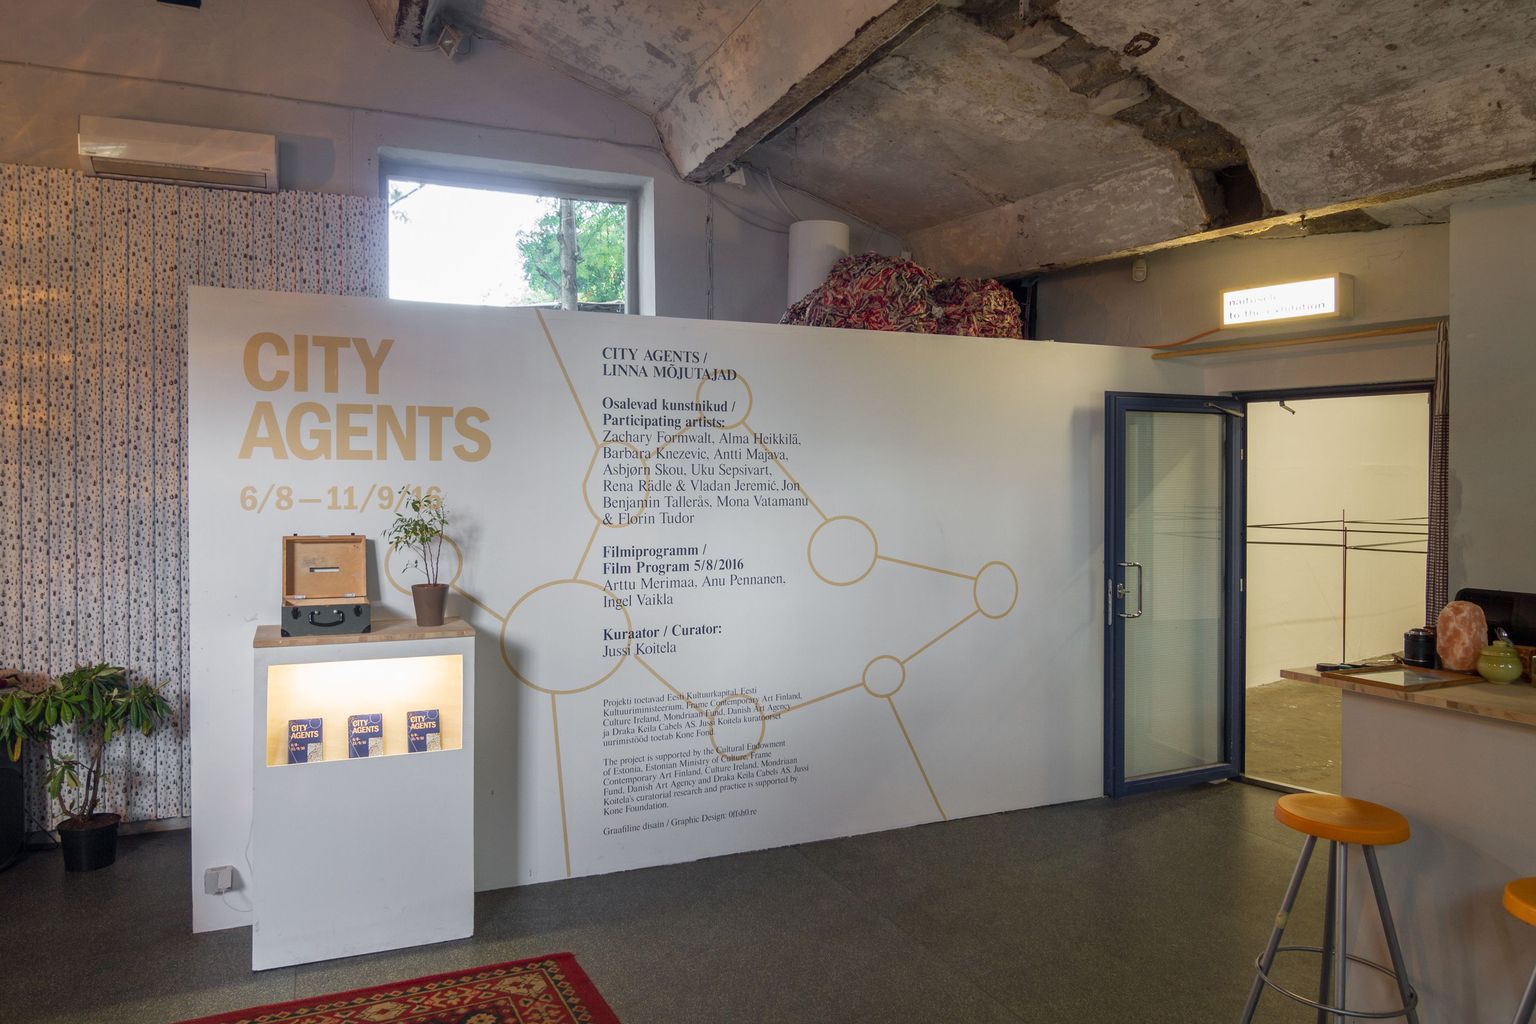 Näituseprojekt «Linna mõjutajad» («City Agents») käsitleb näituse keskkonda ja kaasaegset linnaruumi kui kapitali akumuleerumise kohti.